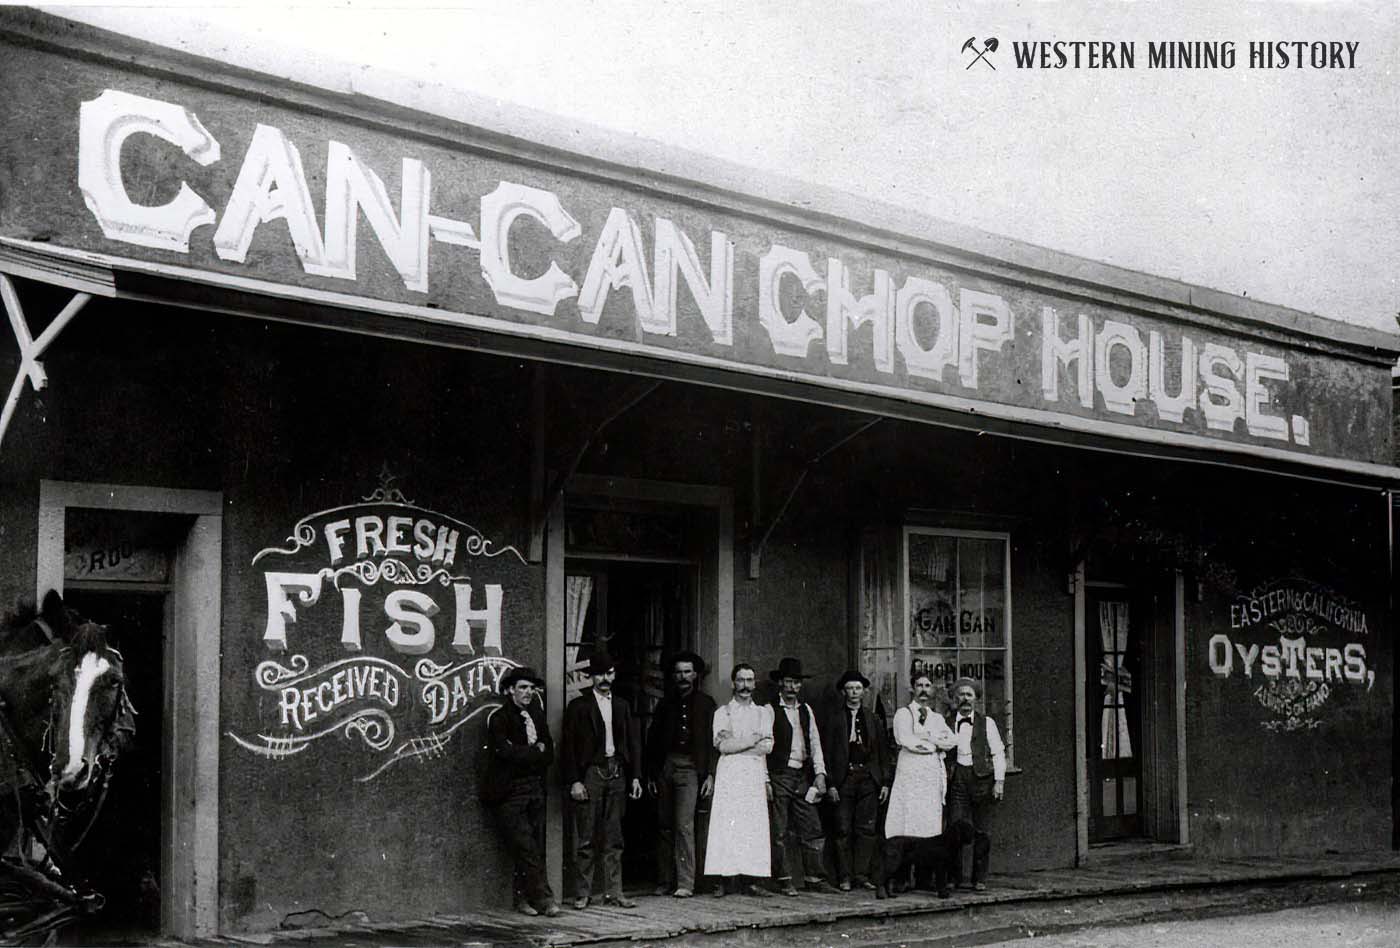 Can-Can Chop House - Bisbee, Arizona ca. 1890s